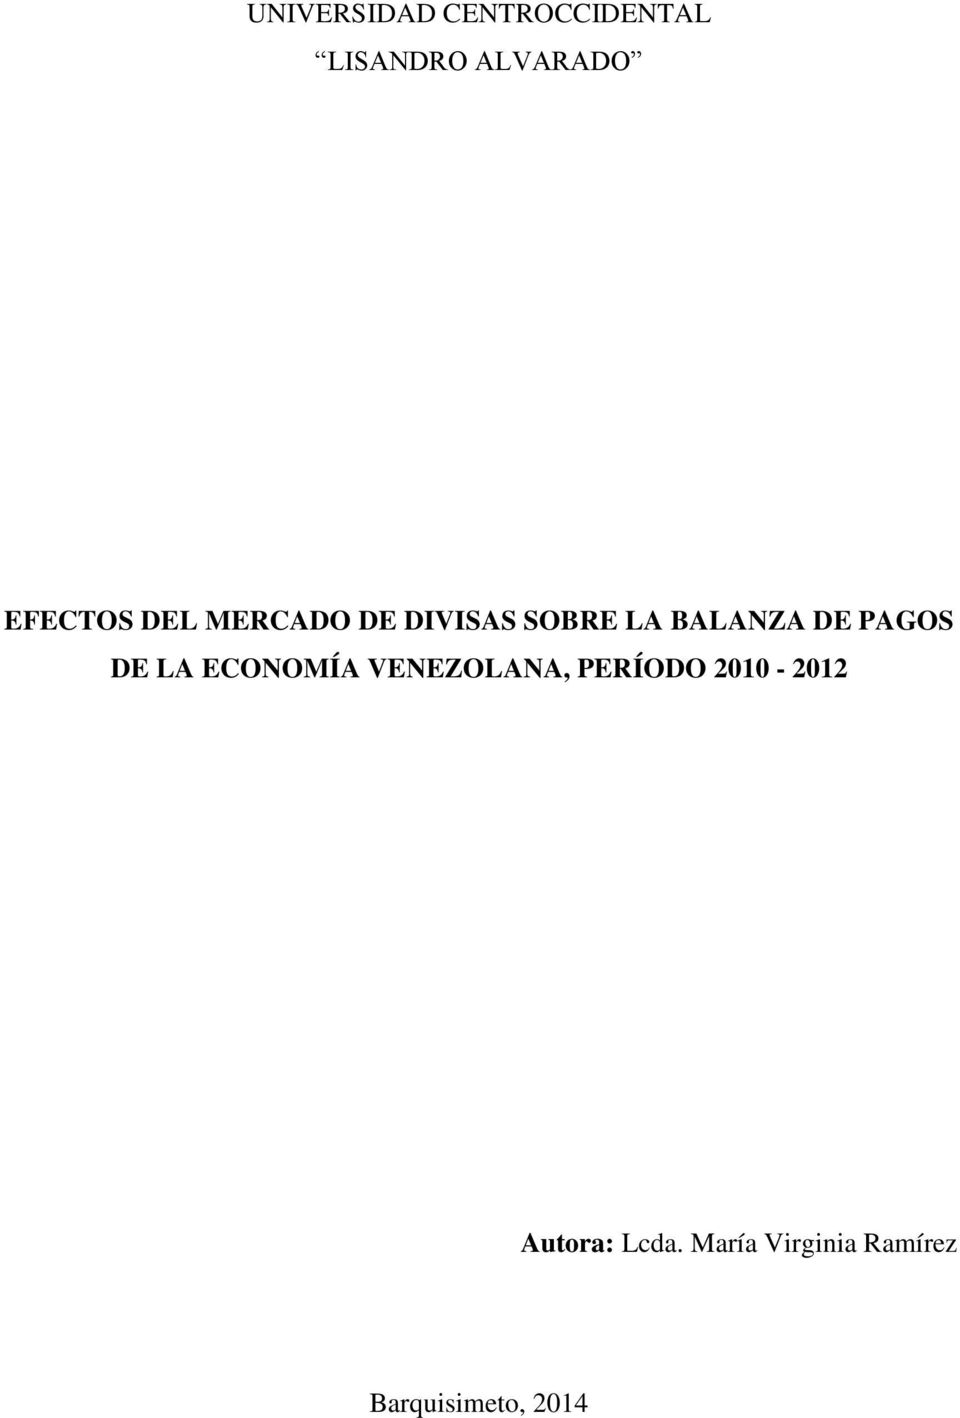 PAGOS DE LA ECONOMÍA VENEZOLANA, PERÍODO 2010-2012